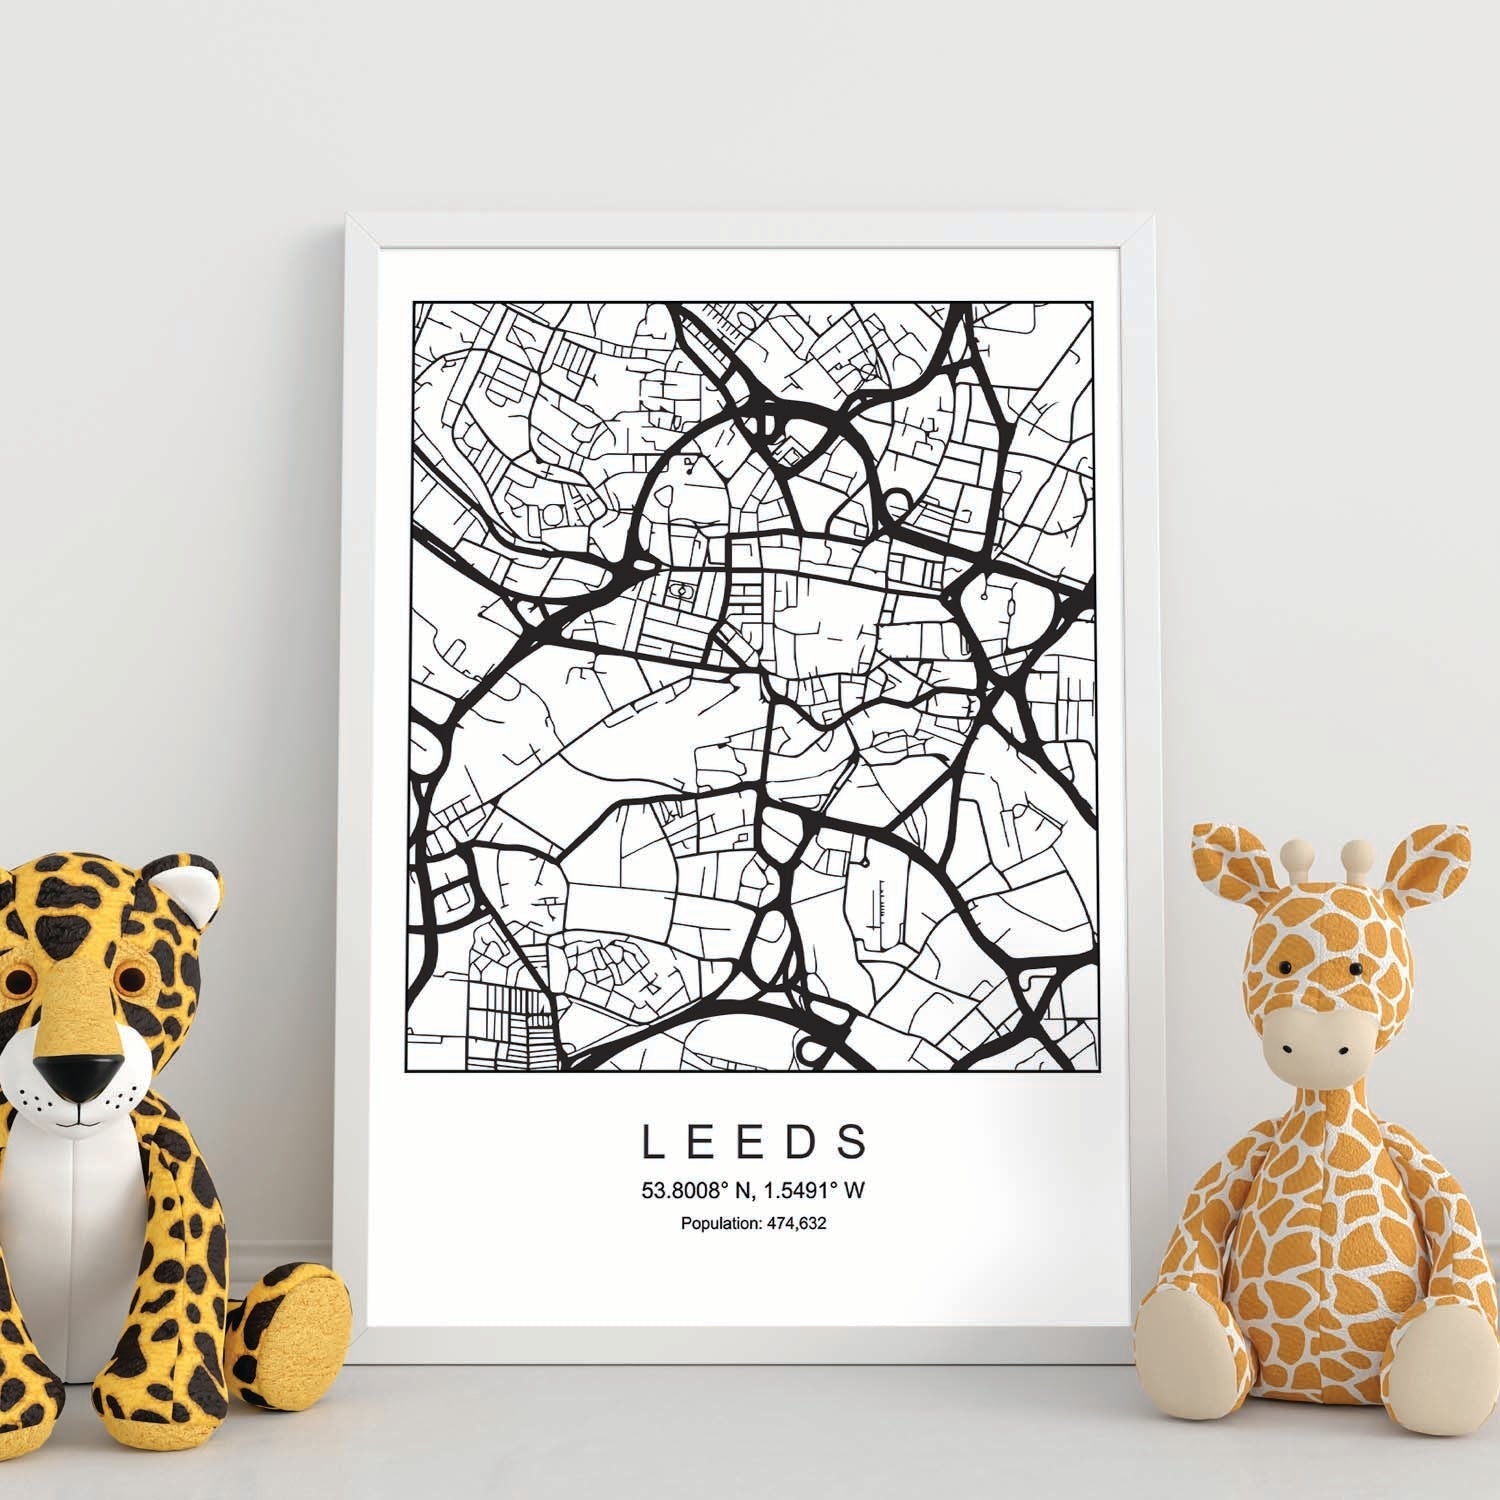 Lámina mapa de la ciudad Leeds estilo nordico en blanco y negro.-Artwork-Nacnic-Nacnic Estudio SL